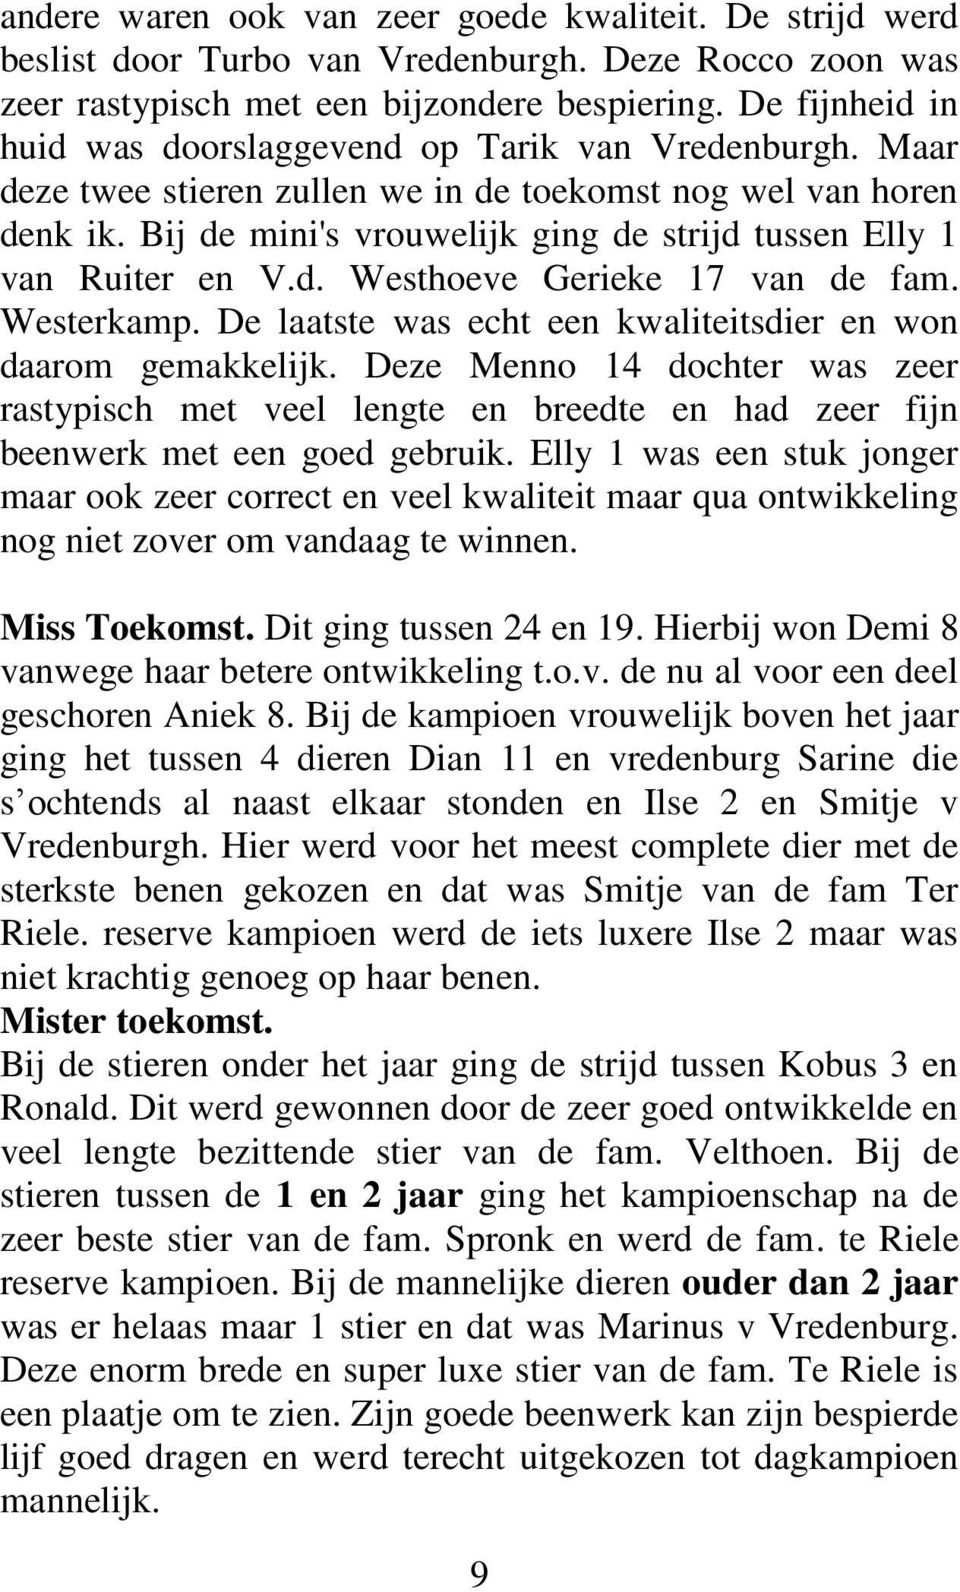 Bij de mini's vrouwelijk ging de strijd tussen Elly 1 van Ruiter en V.d. Westhoeve Gerieke 17 van de fam. Westerkamp. De laatste was echt een kwaliteitsdier en won daarom gemakkelijk.